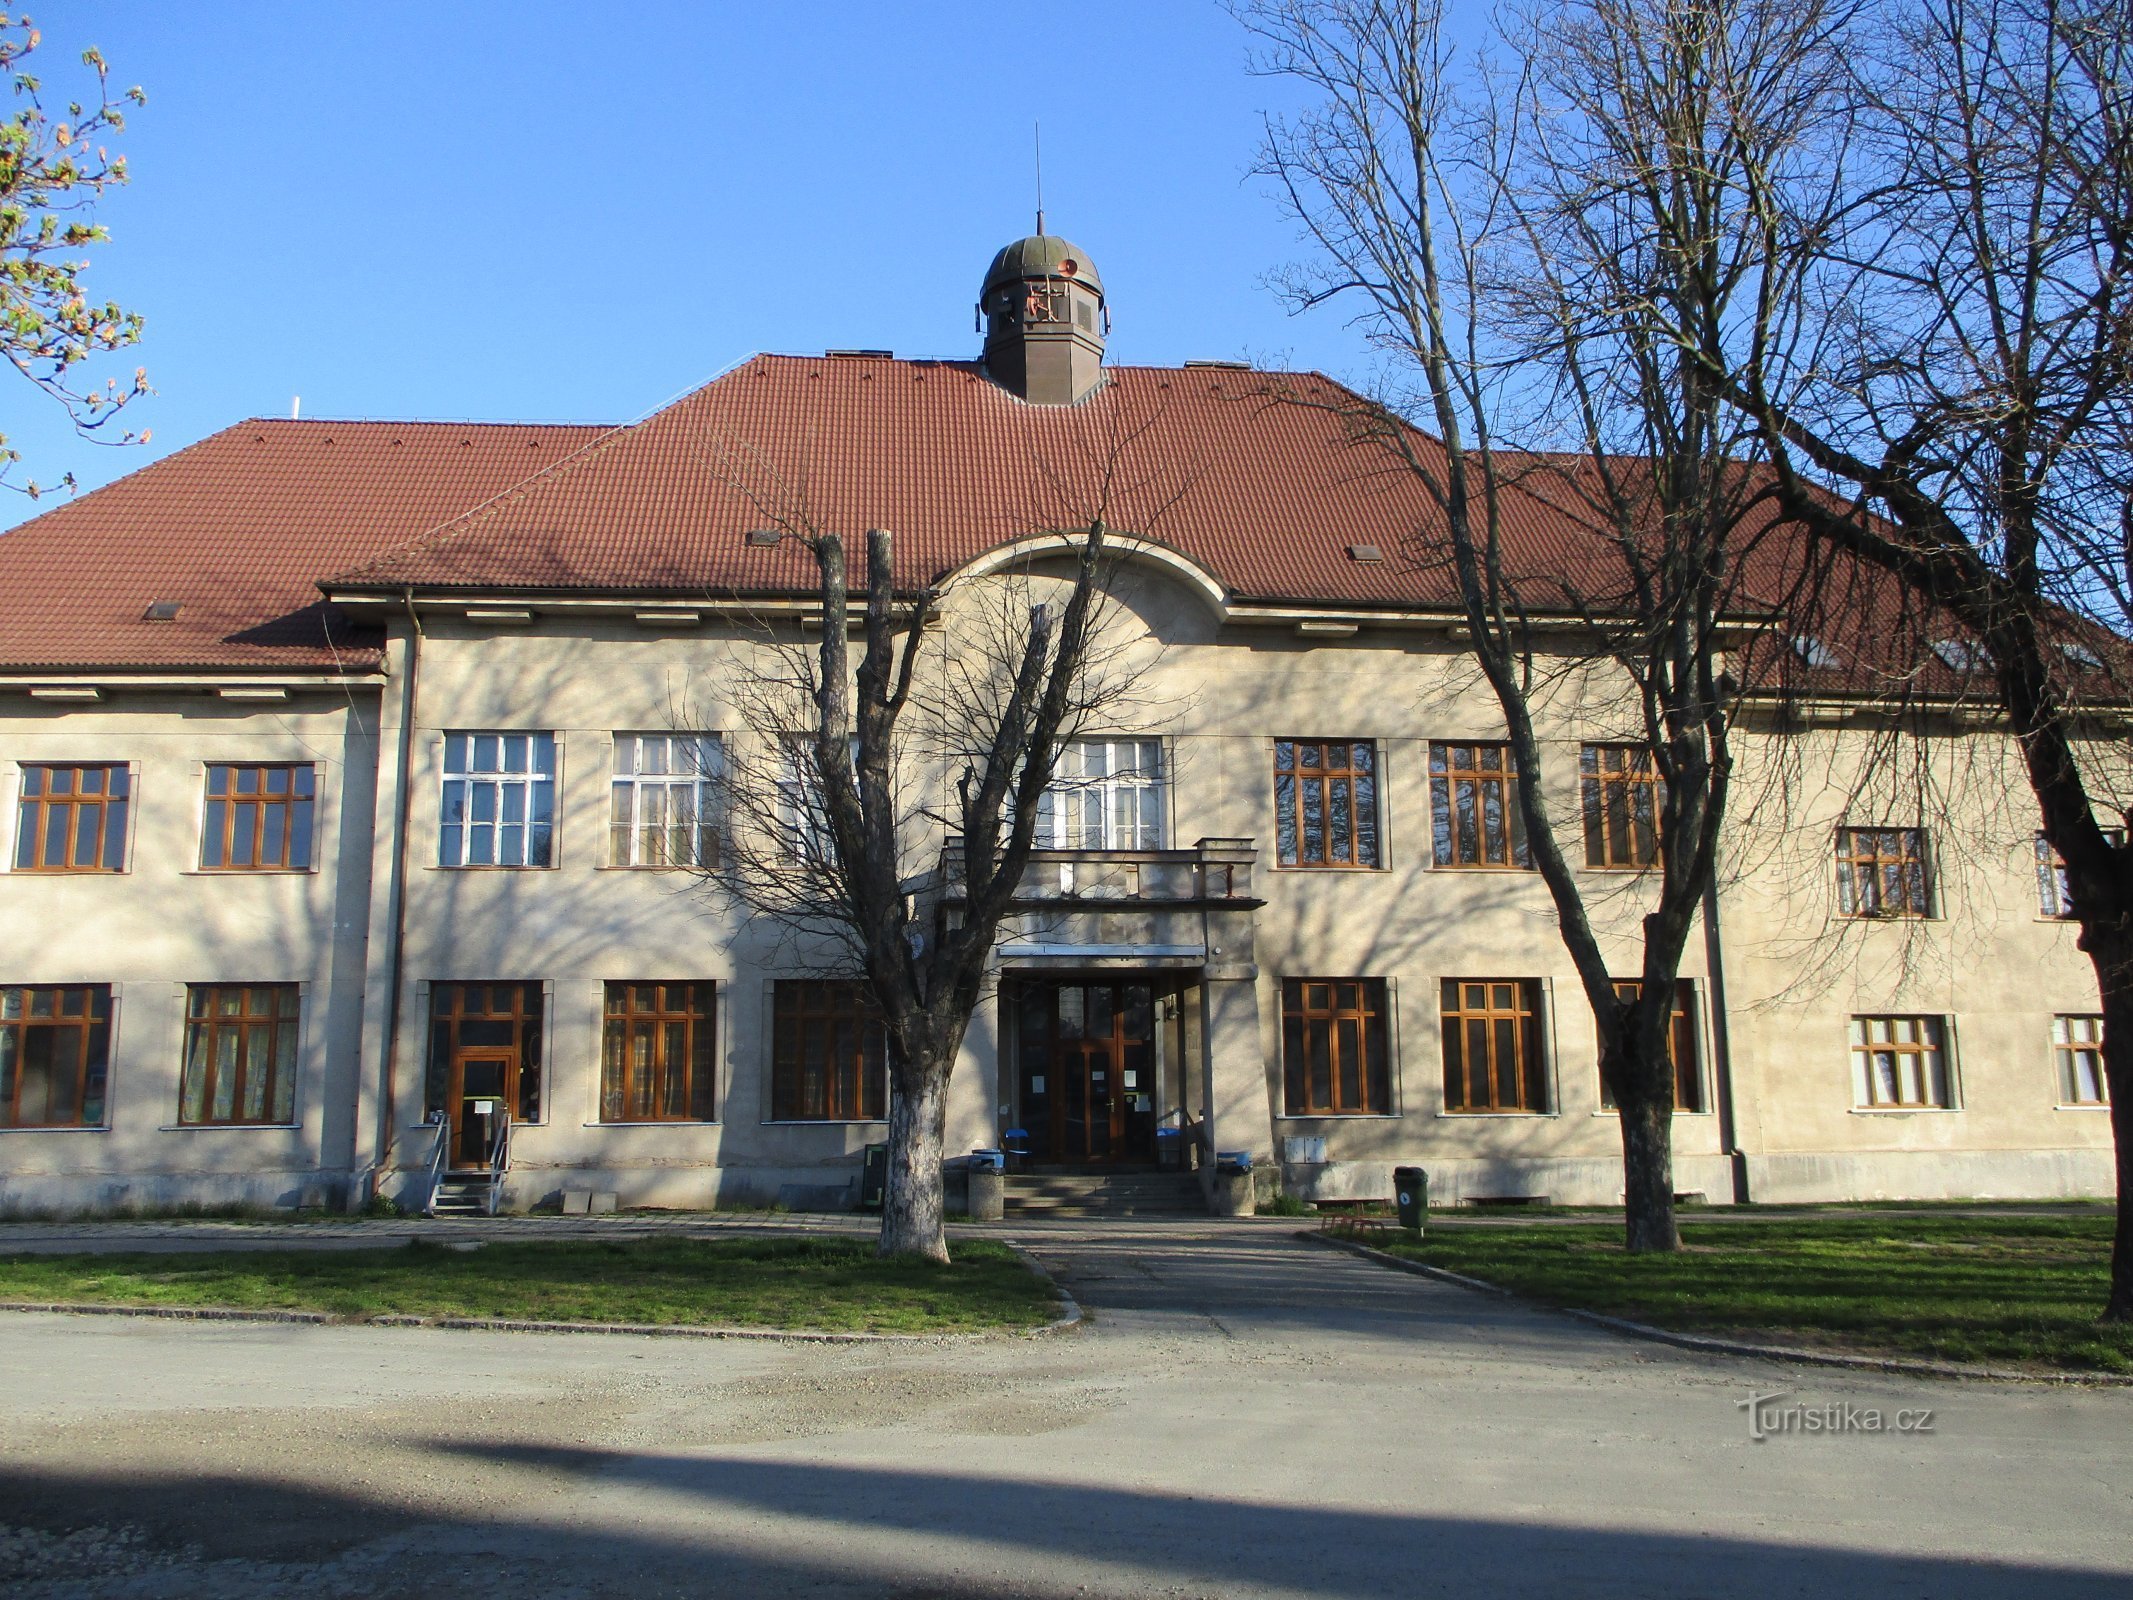 Hradecká nr. 151 (voormalige school voor jongensonderwijs, Opatovice nad Labem, 12.4.2020/XNUMX/XNUMX)